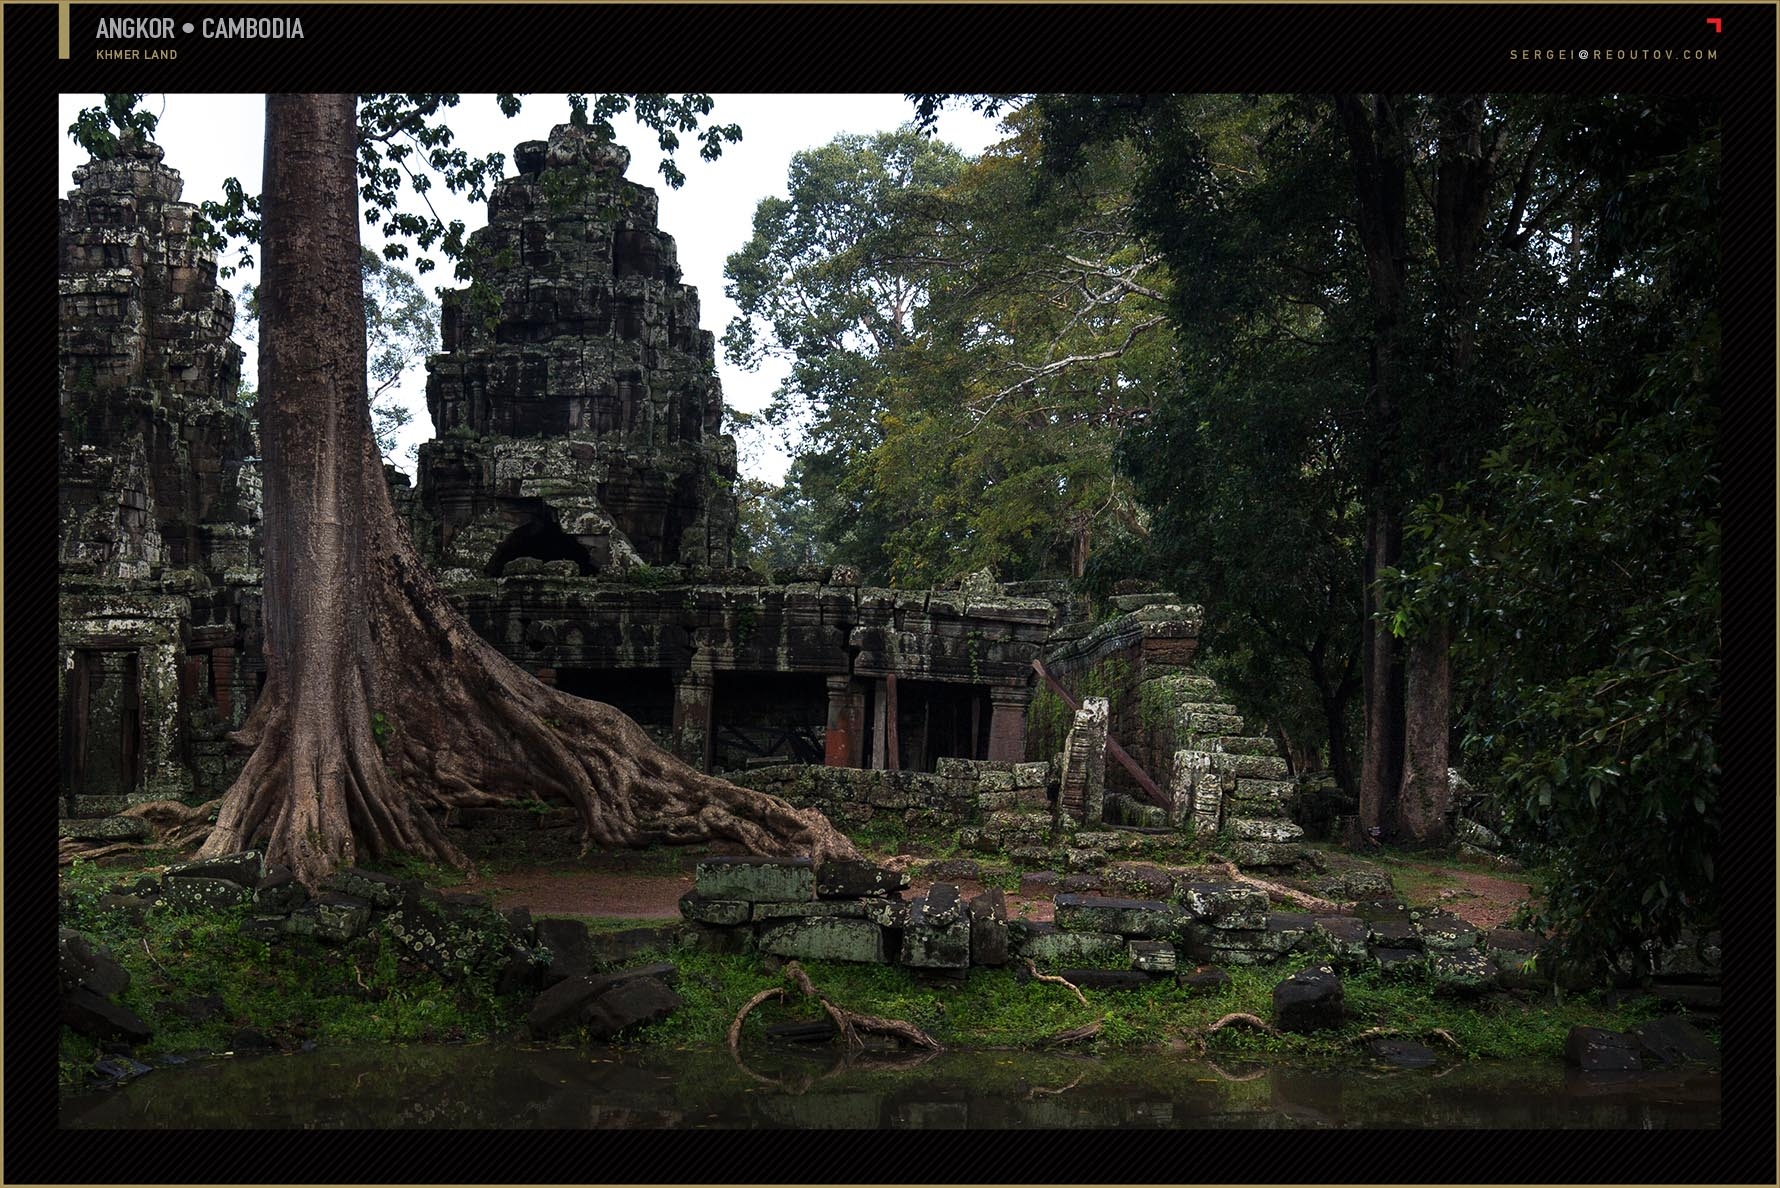 Bayon Temple, Angkor, Siem Reap, Cambodia